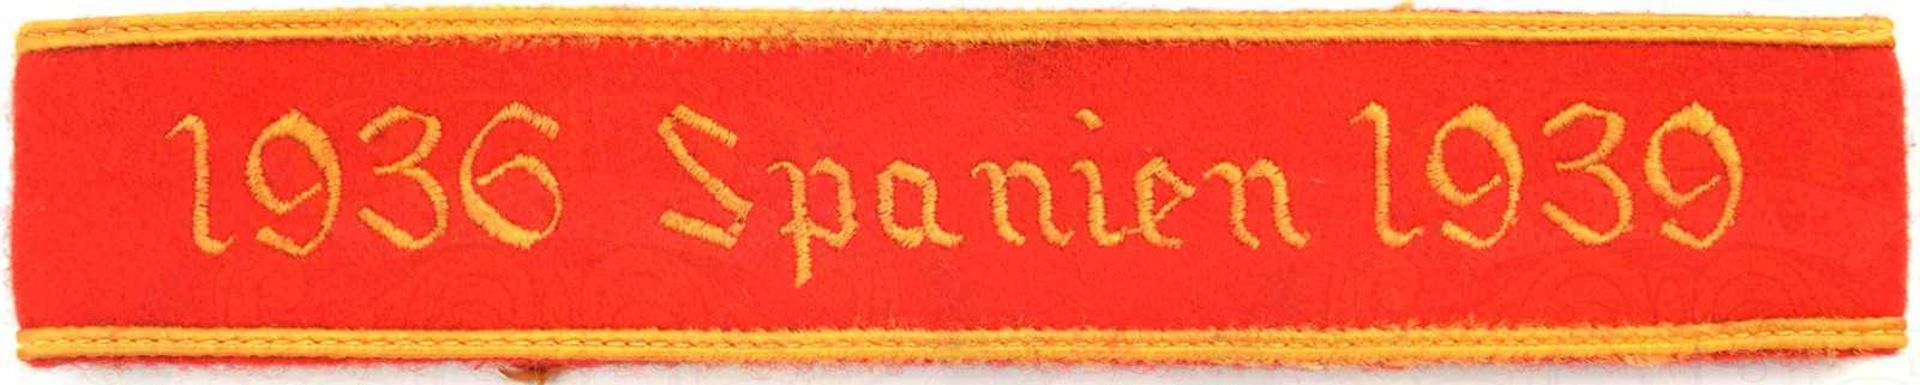 ÄRMELBAND „1936 SPANIEN 1939“, Sammleranfertigung, rotes Tuch, goldfarbener maschinengestickt, L. 49